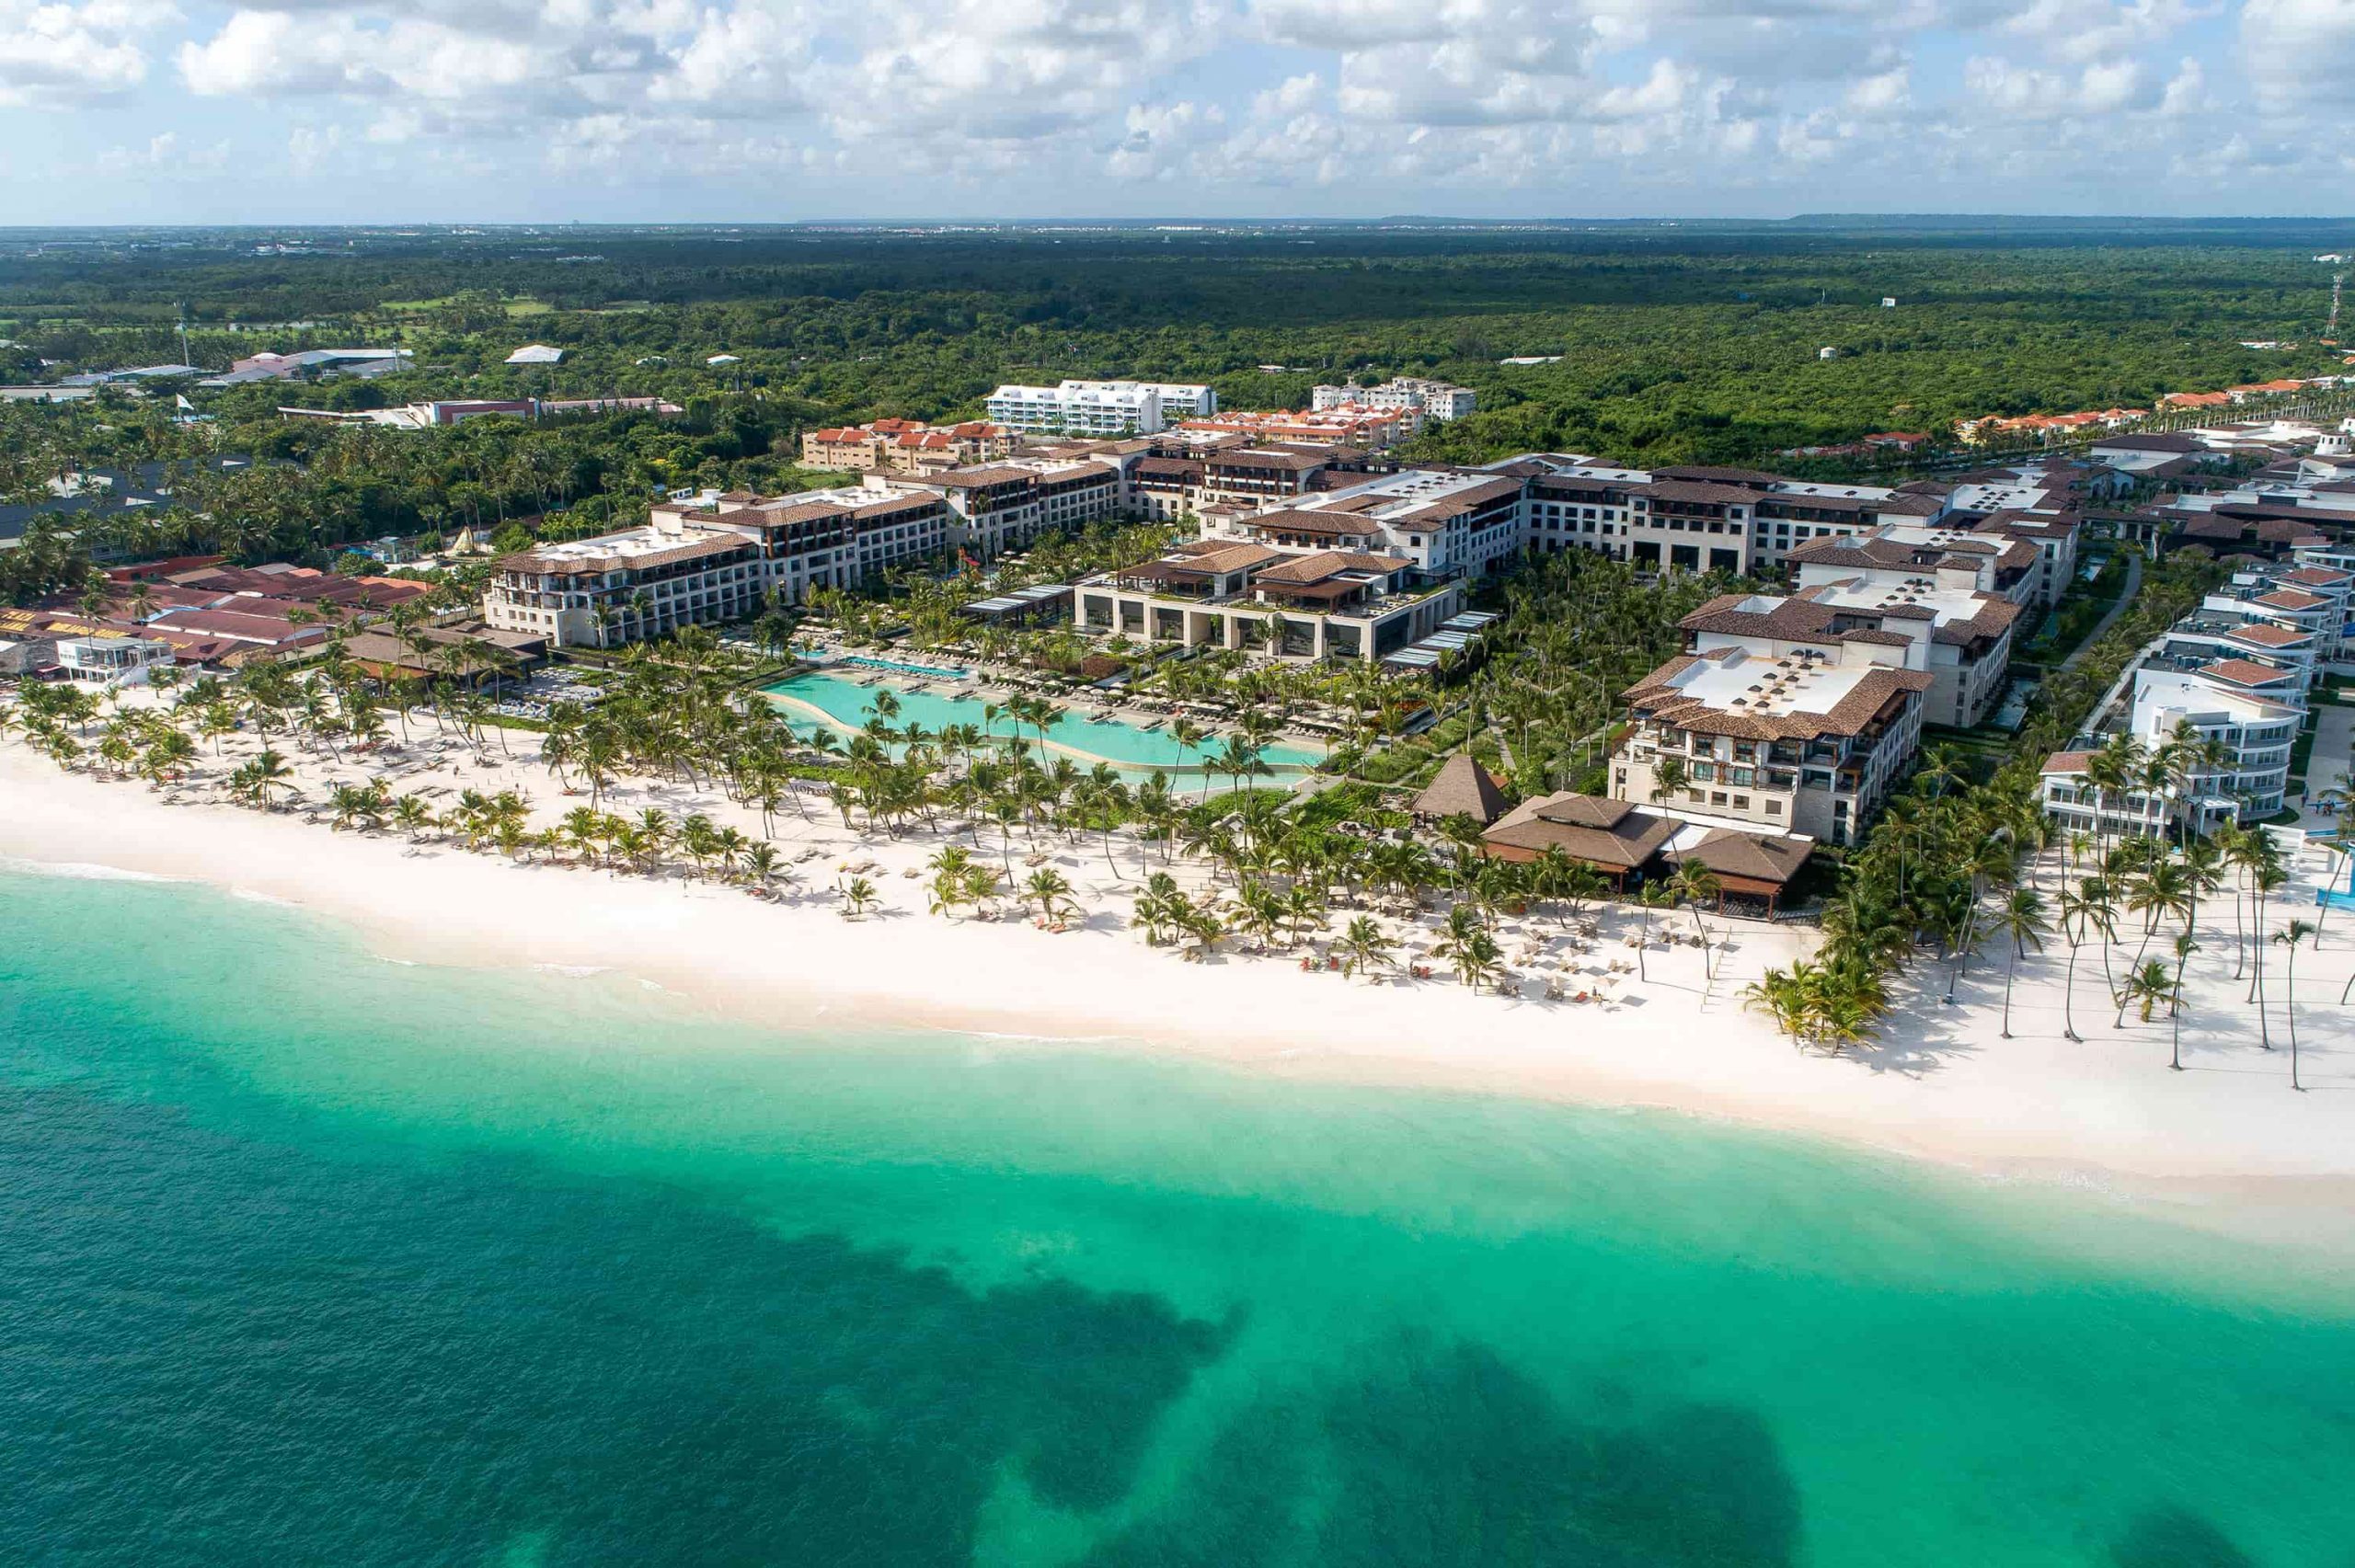 El hotel Lopesan Costa Bávaro Resort regresa a la actividad para fortalecer la propuesta turística de República Dominicana